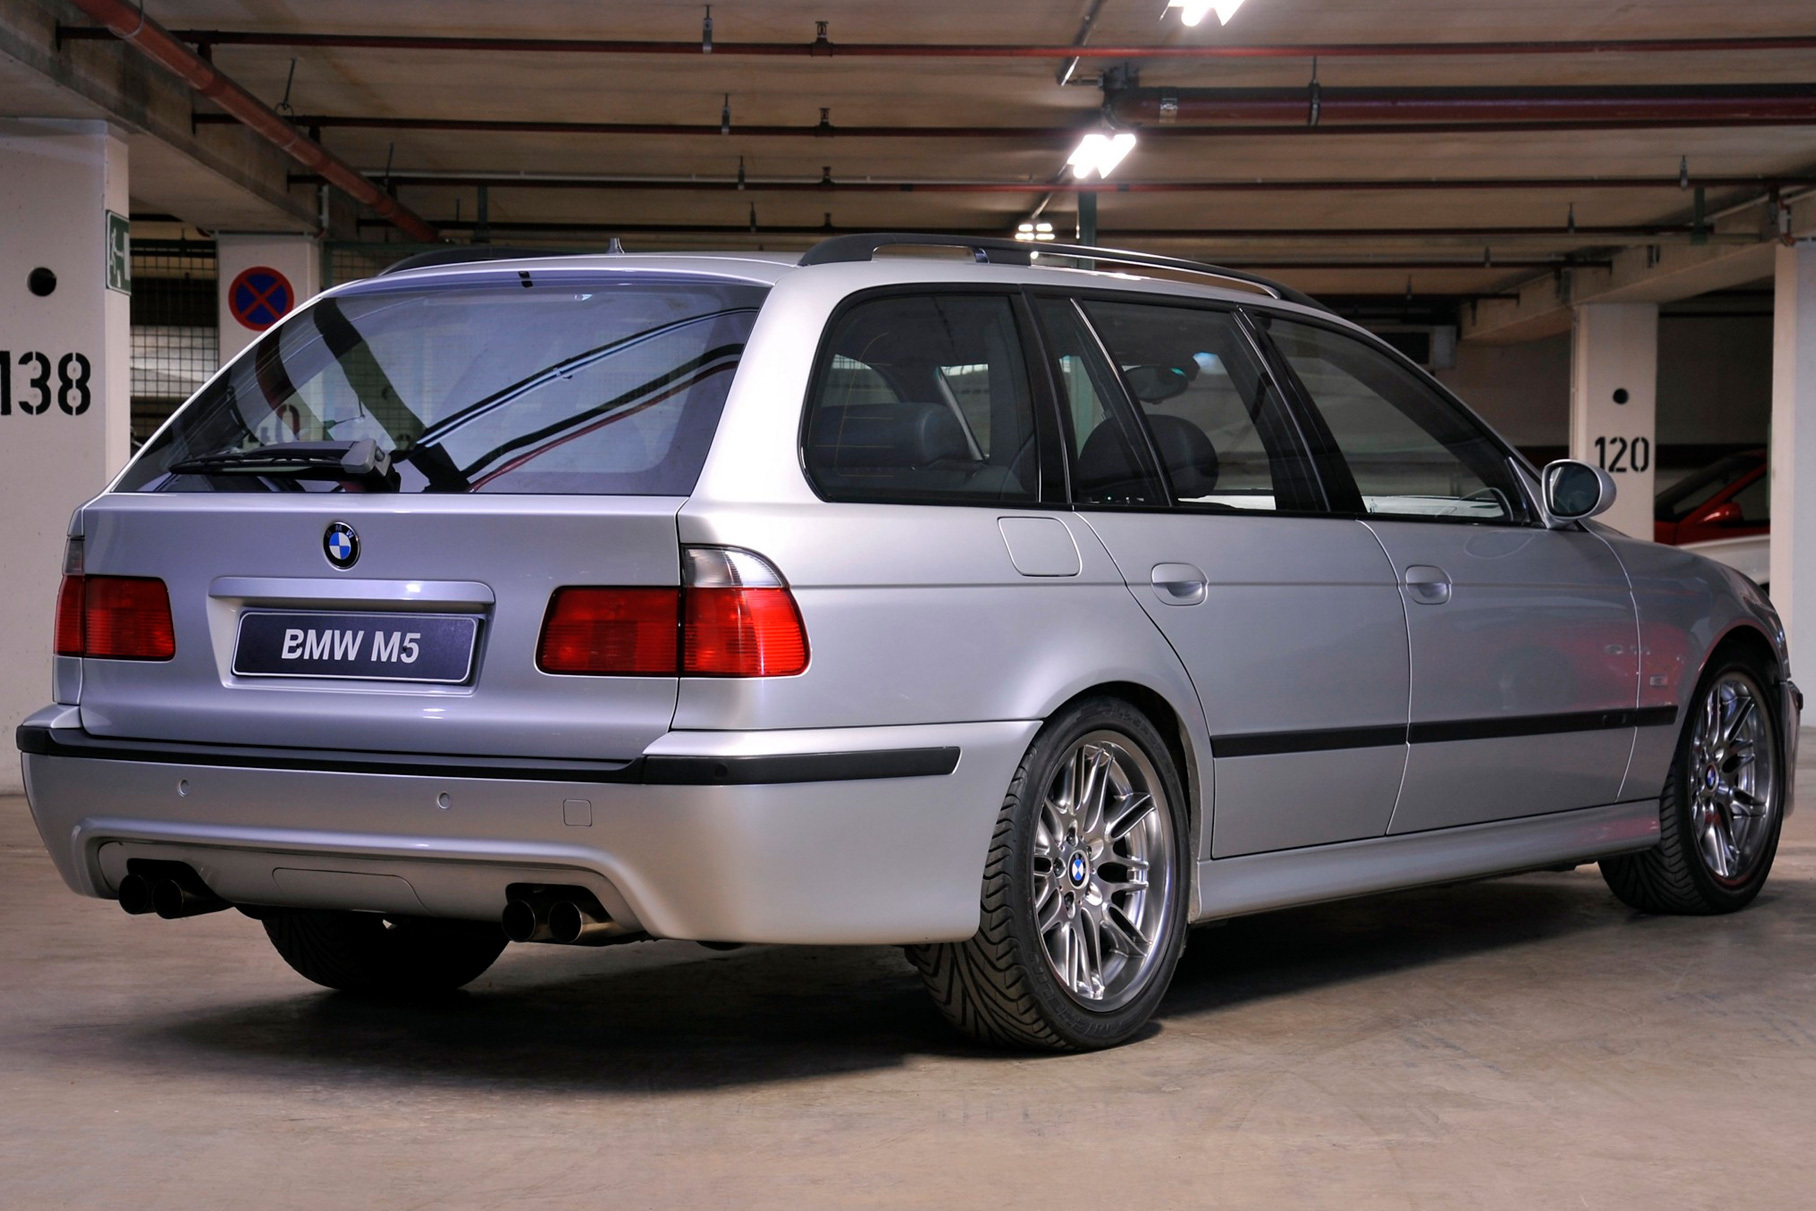 1999 BMW M5 Touring Concept (E39)